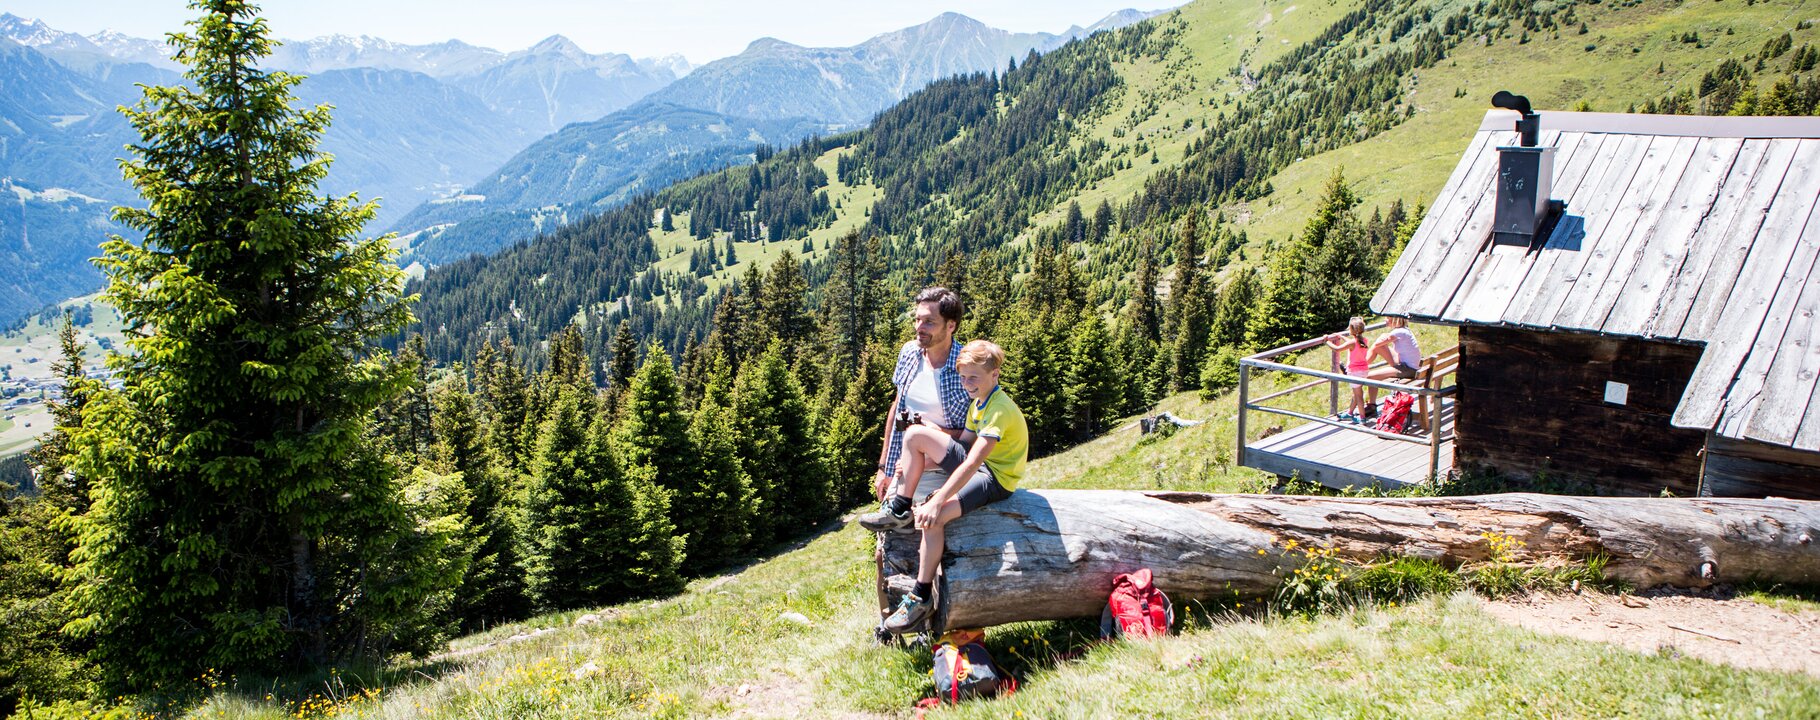 Familie genießt die Fernsicht bei einer Hütte in Serfaus Fiss Ladis in Tirol | © danielzangerl.com